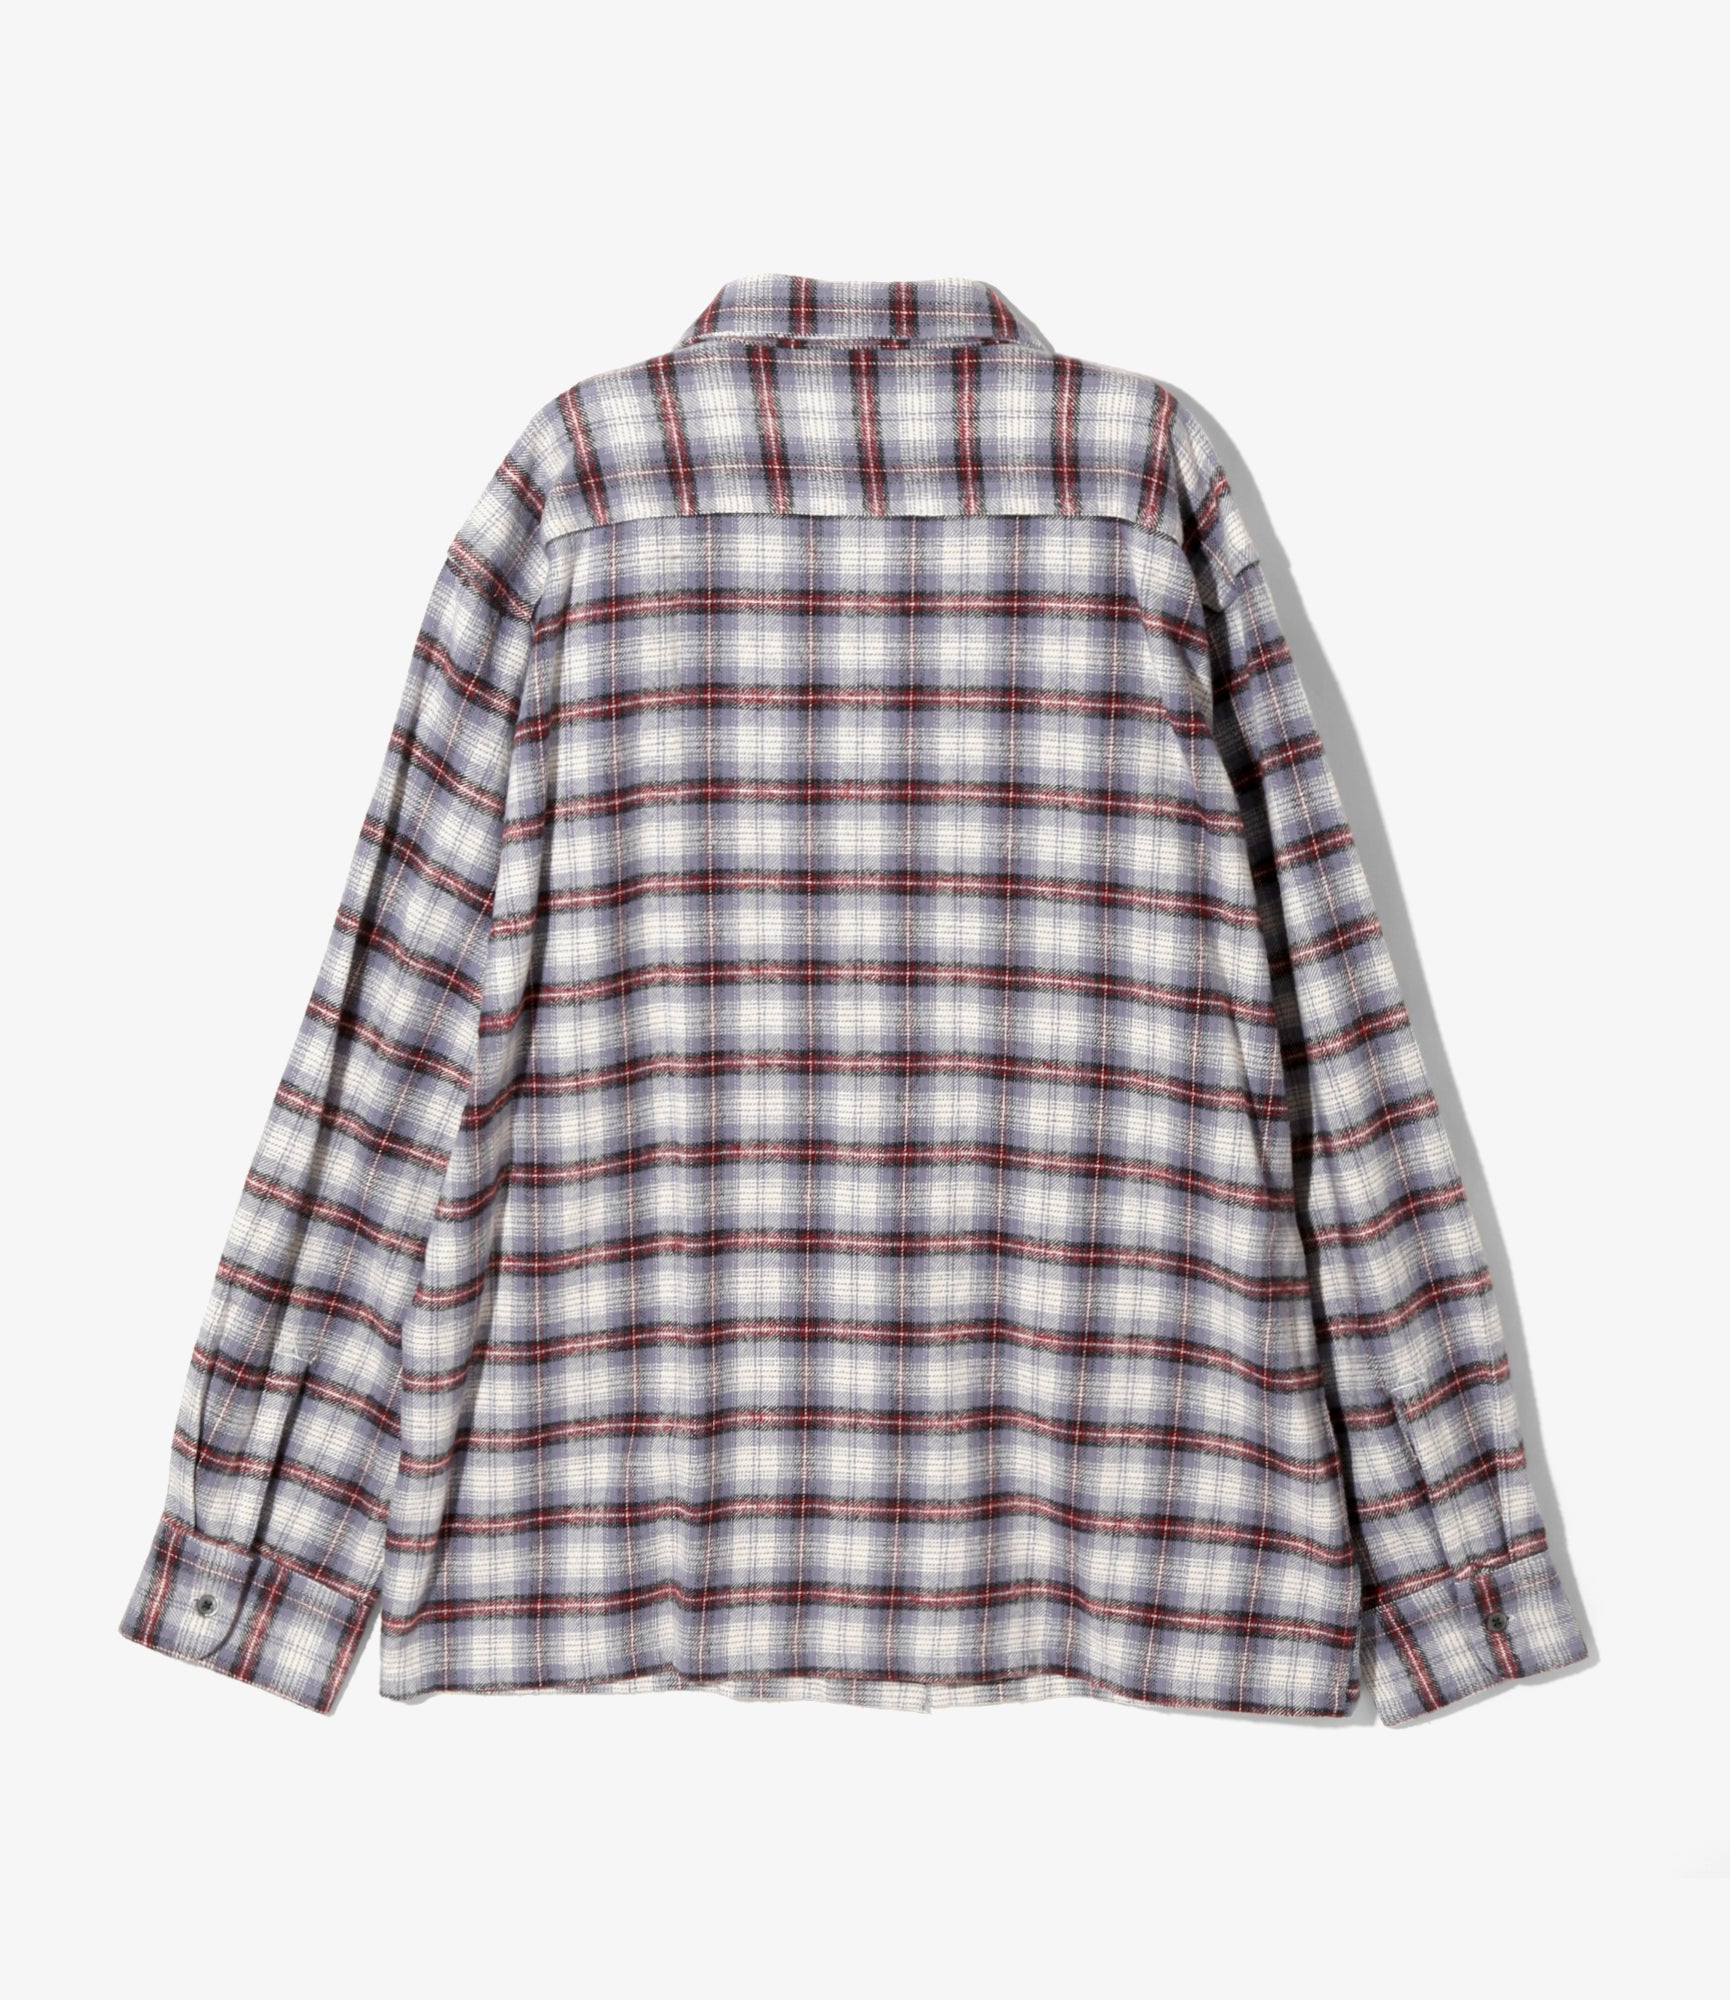 6 Pocket Classic Shirt - Lavender / Bordeaux - Flannel Twill / Plaid